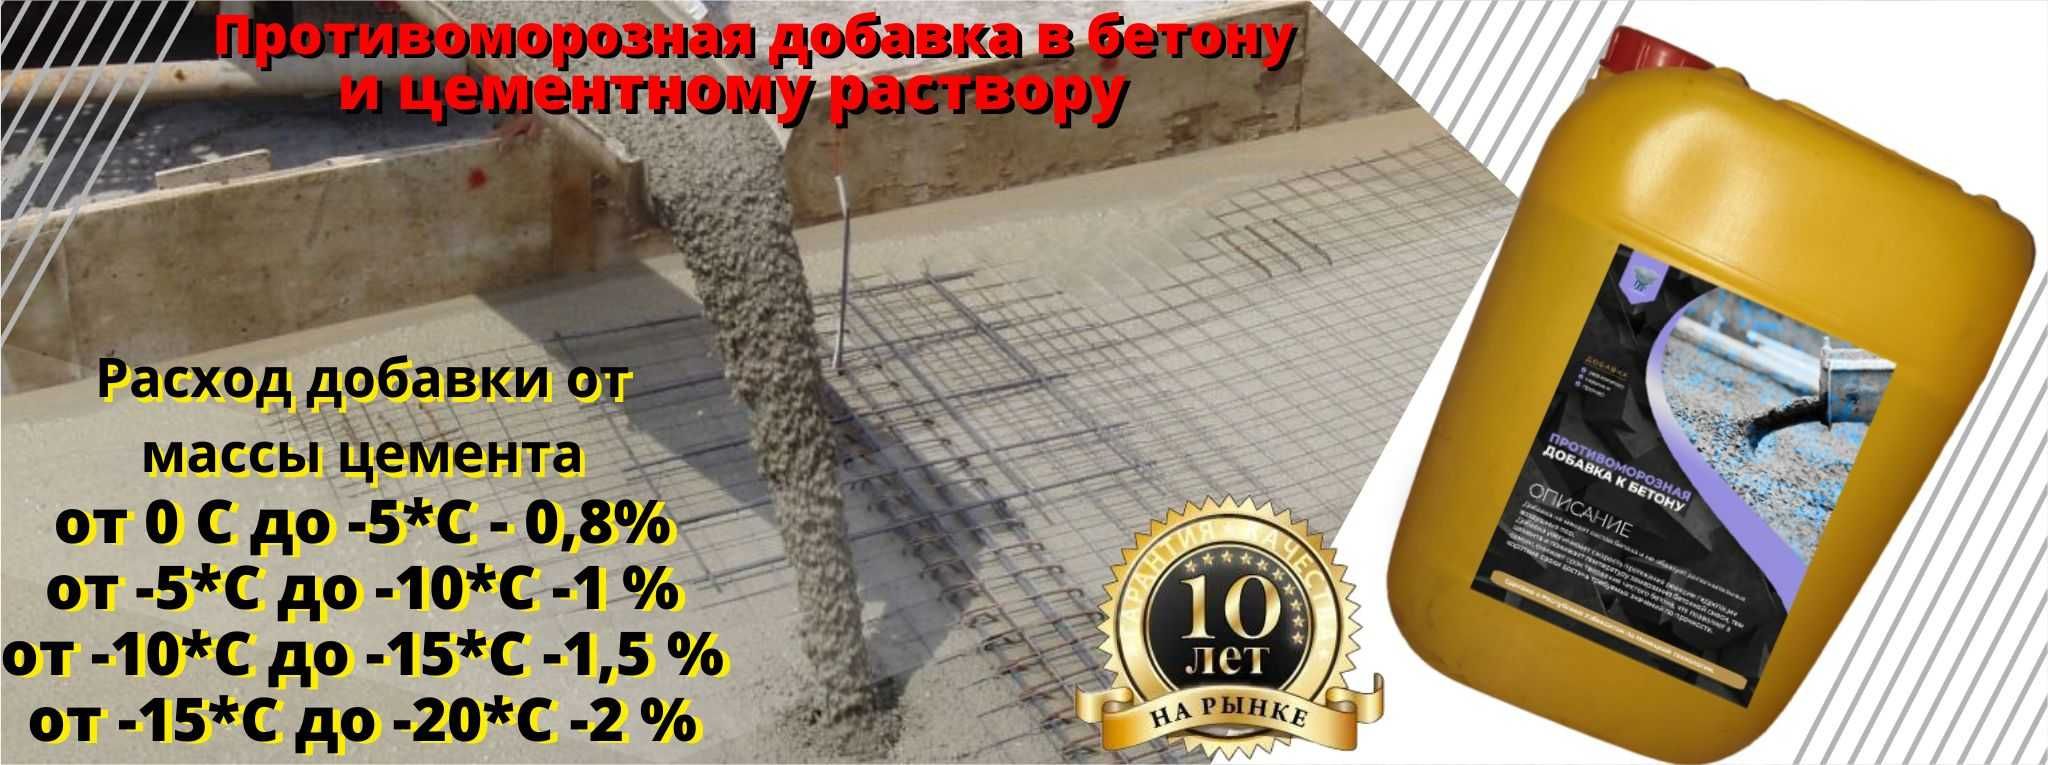 Антимороз для бетона по немецкому технологи производиться в Узбекистан